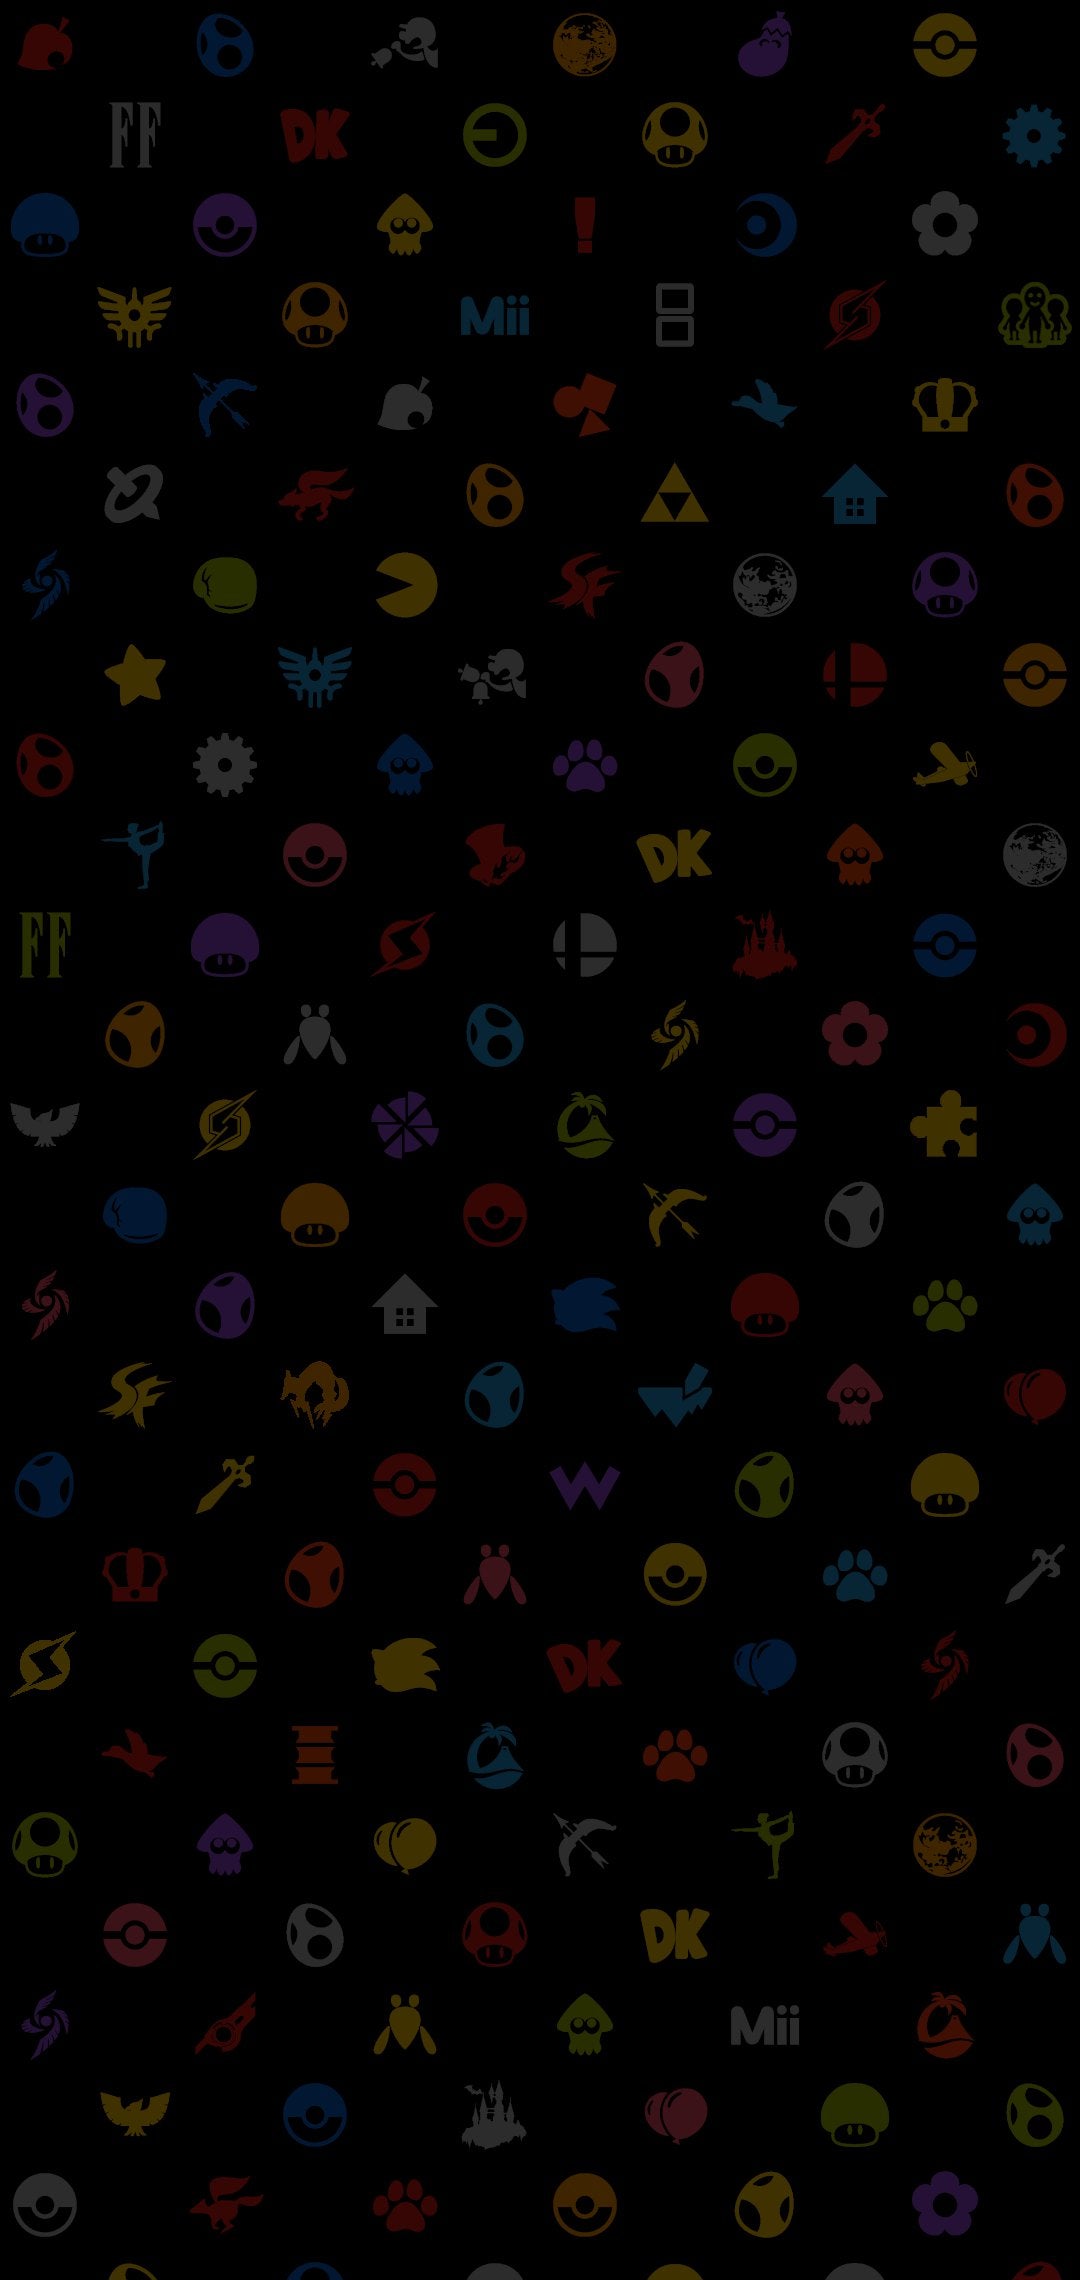 Smash Bros Logo Wallpapers